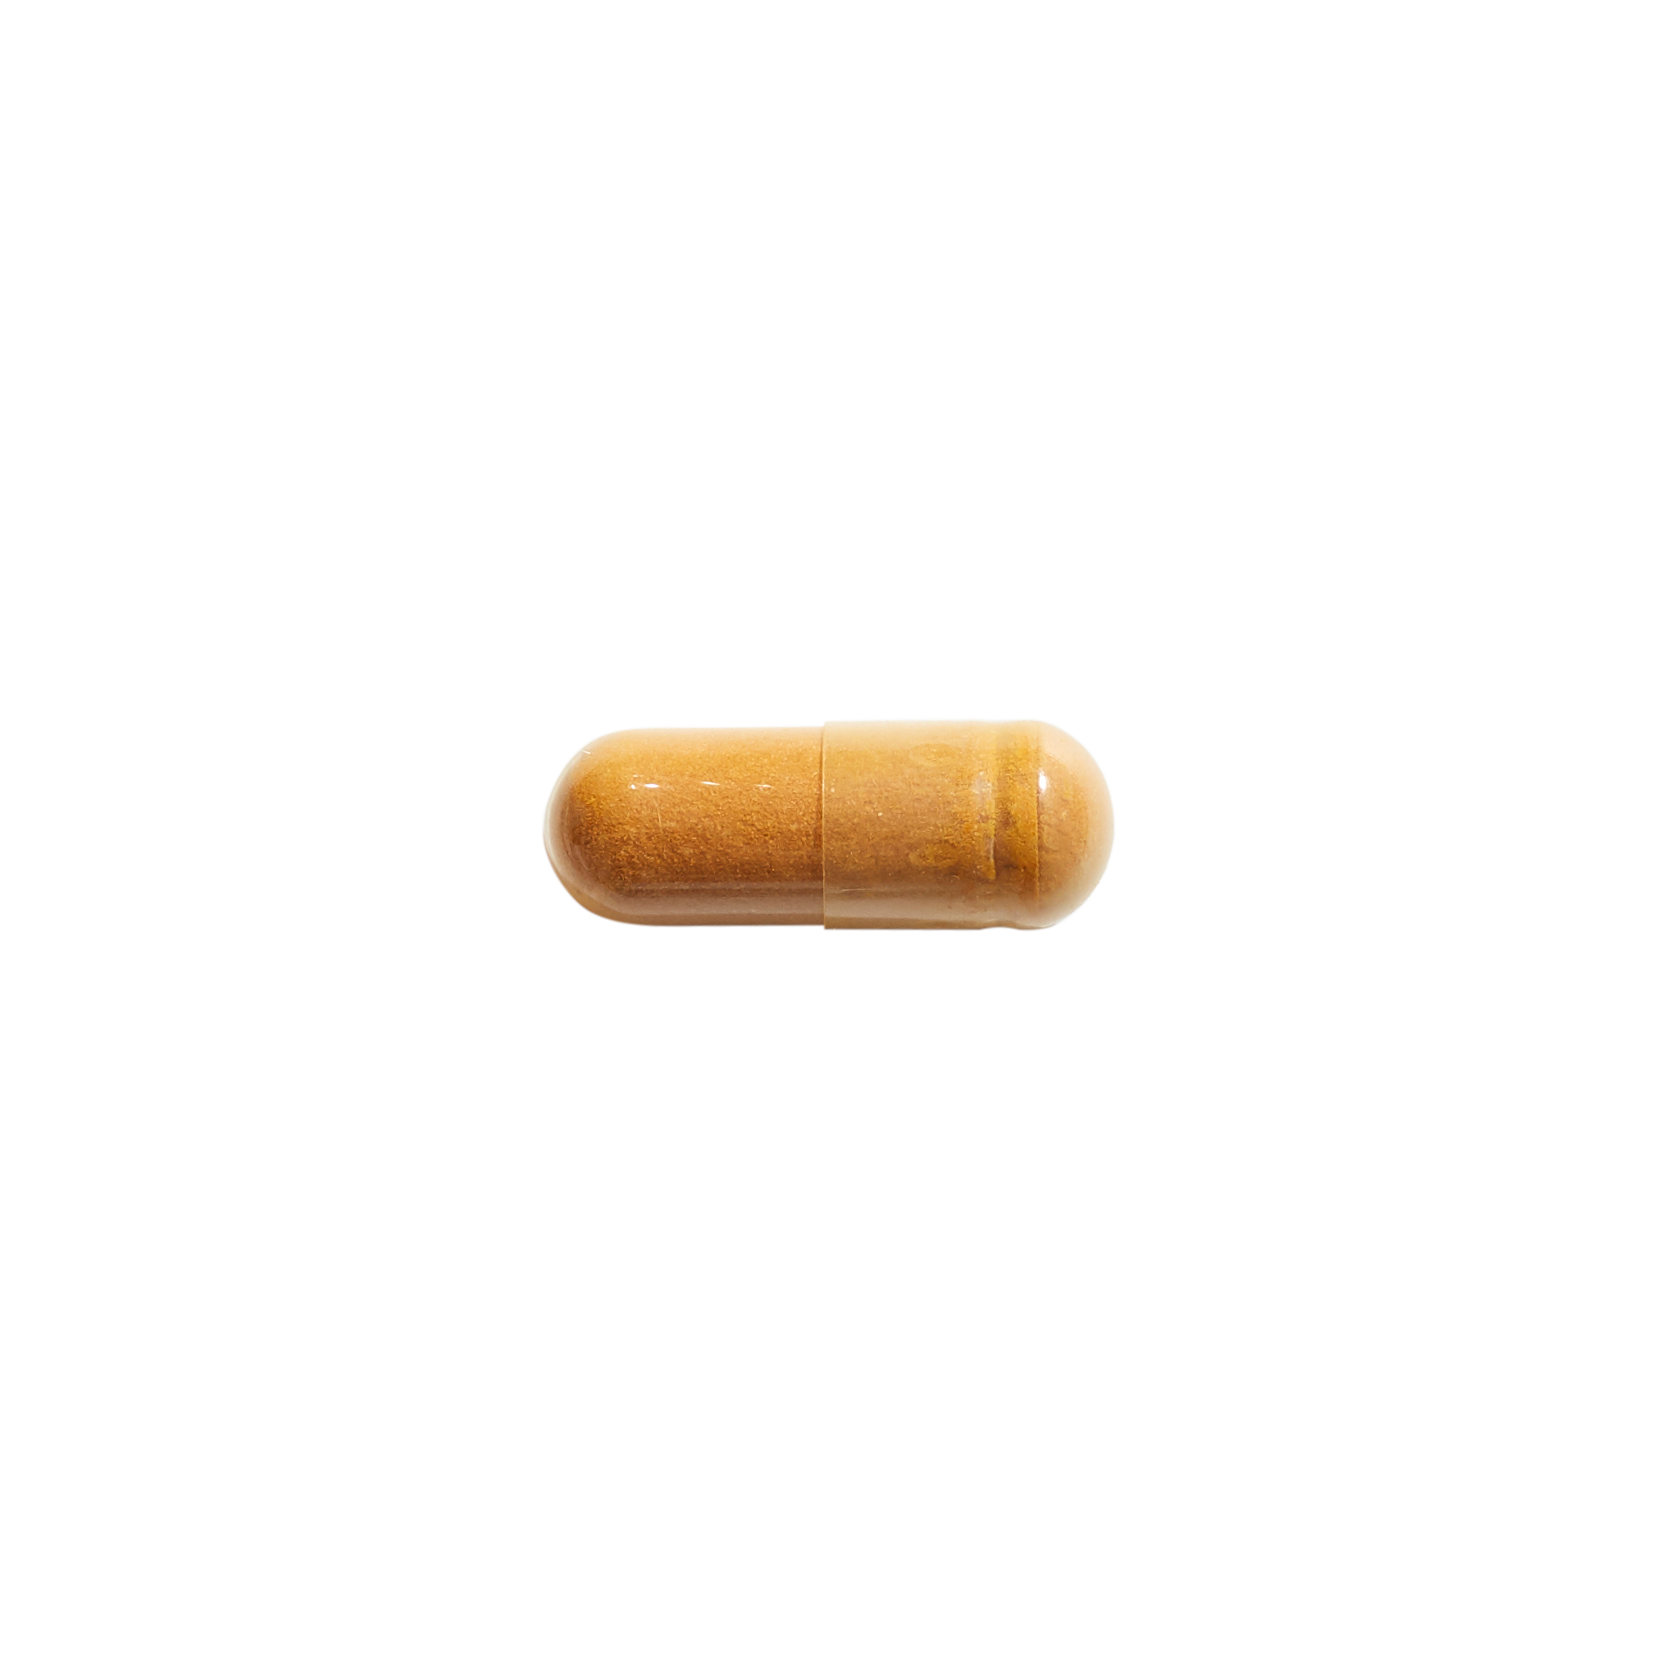 yellow anti-inflammatory turmeric supplement